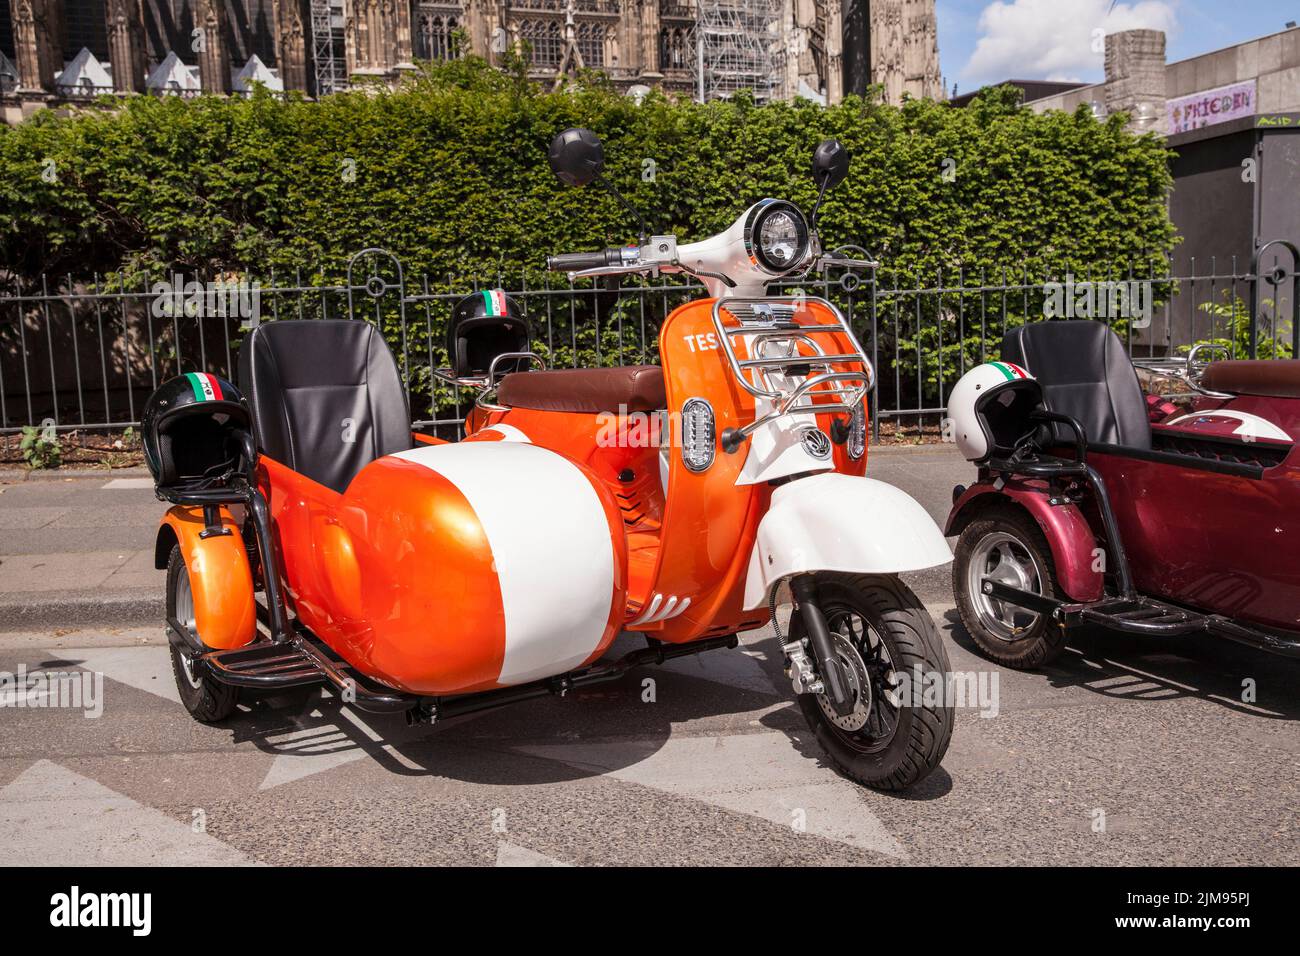 Gli scooter e-Vespina con sidecar sono disponibili in affitto per gite in città vicino alla cattedrale, Colonia, Germania. E-Vespina Roller mit Seitenwagen stehen z Foto Stock